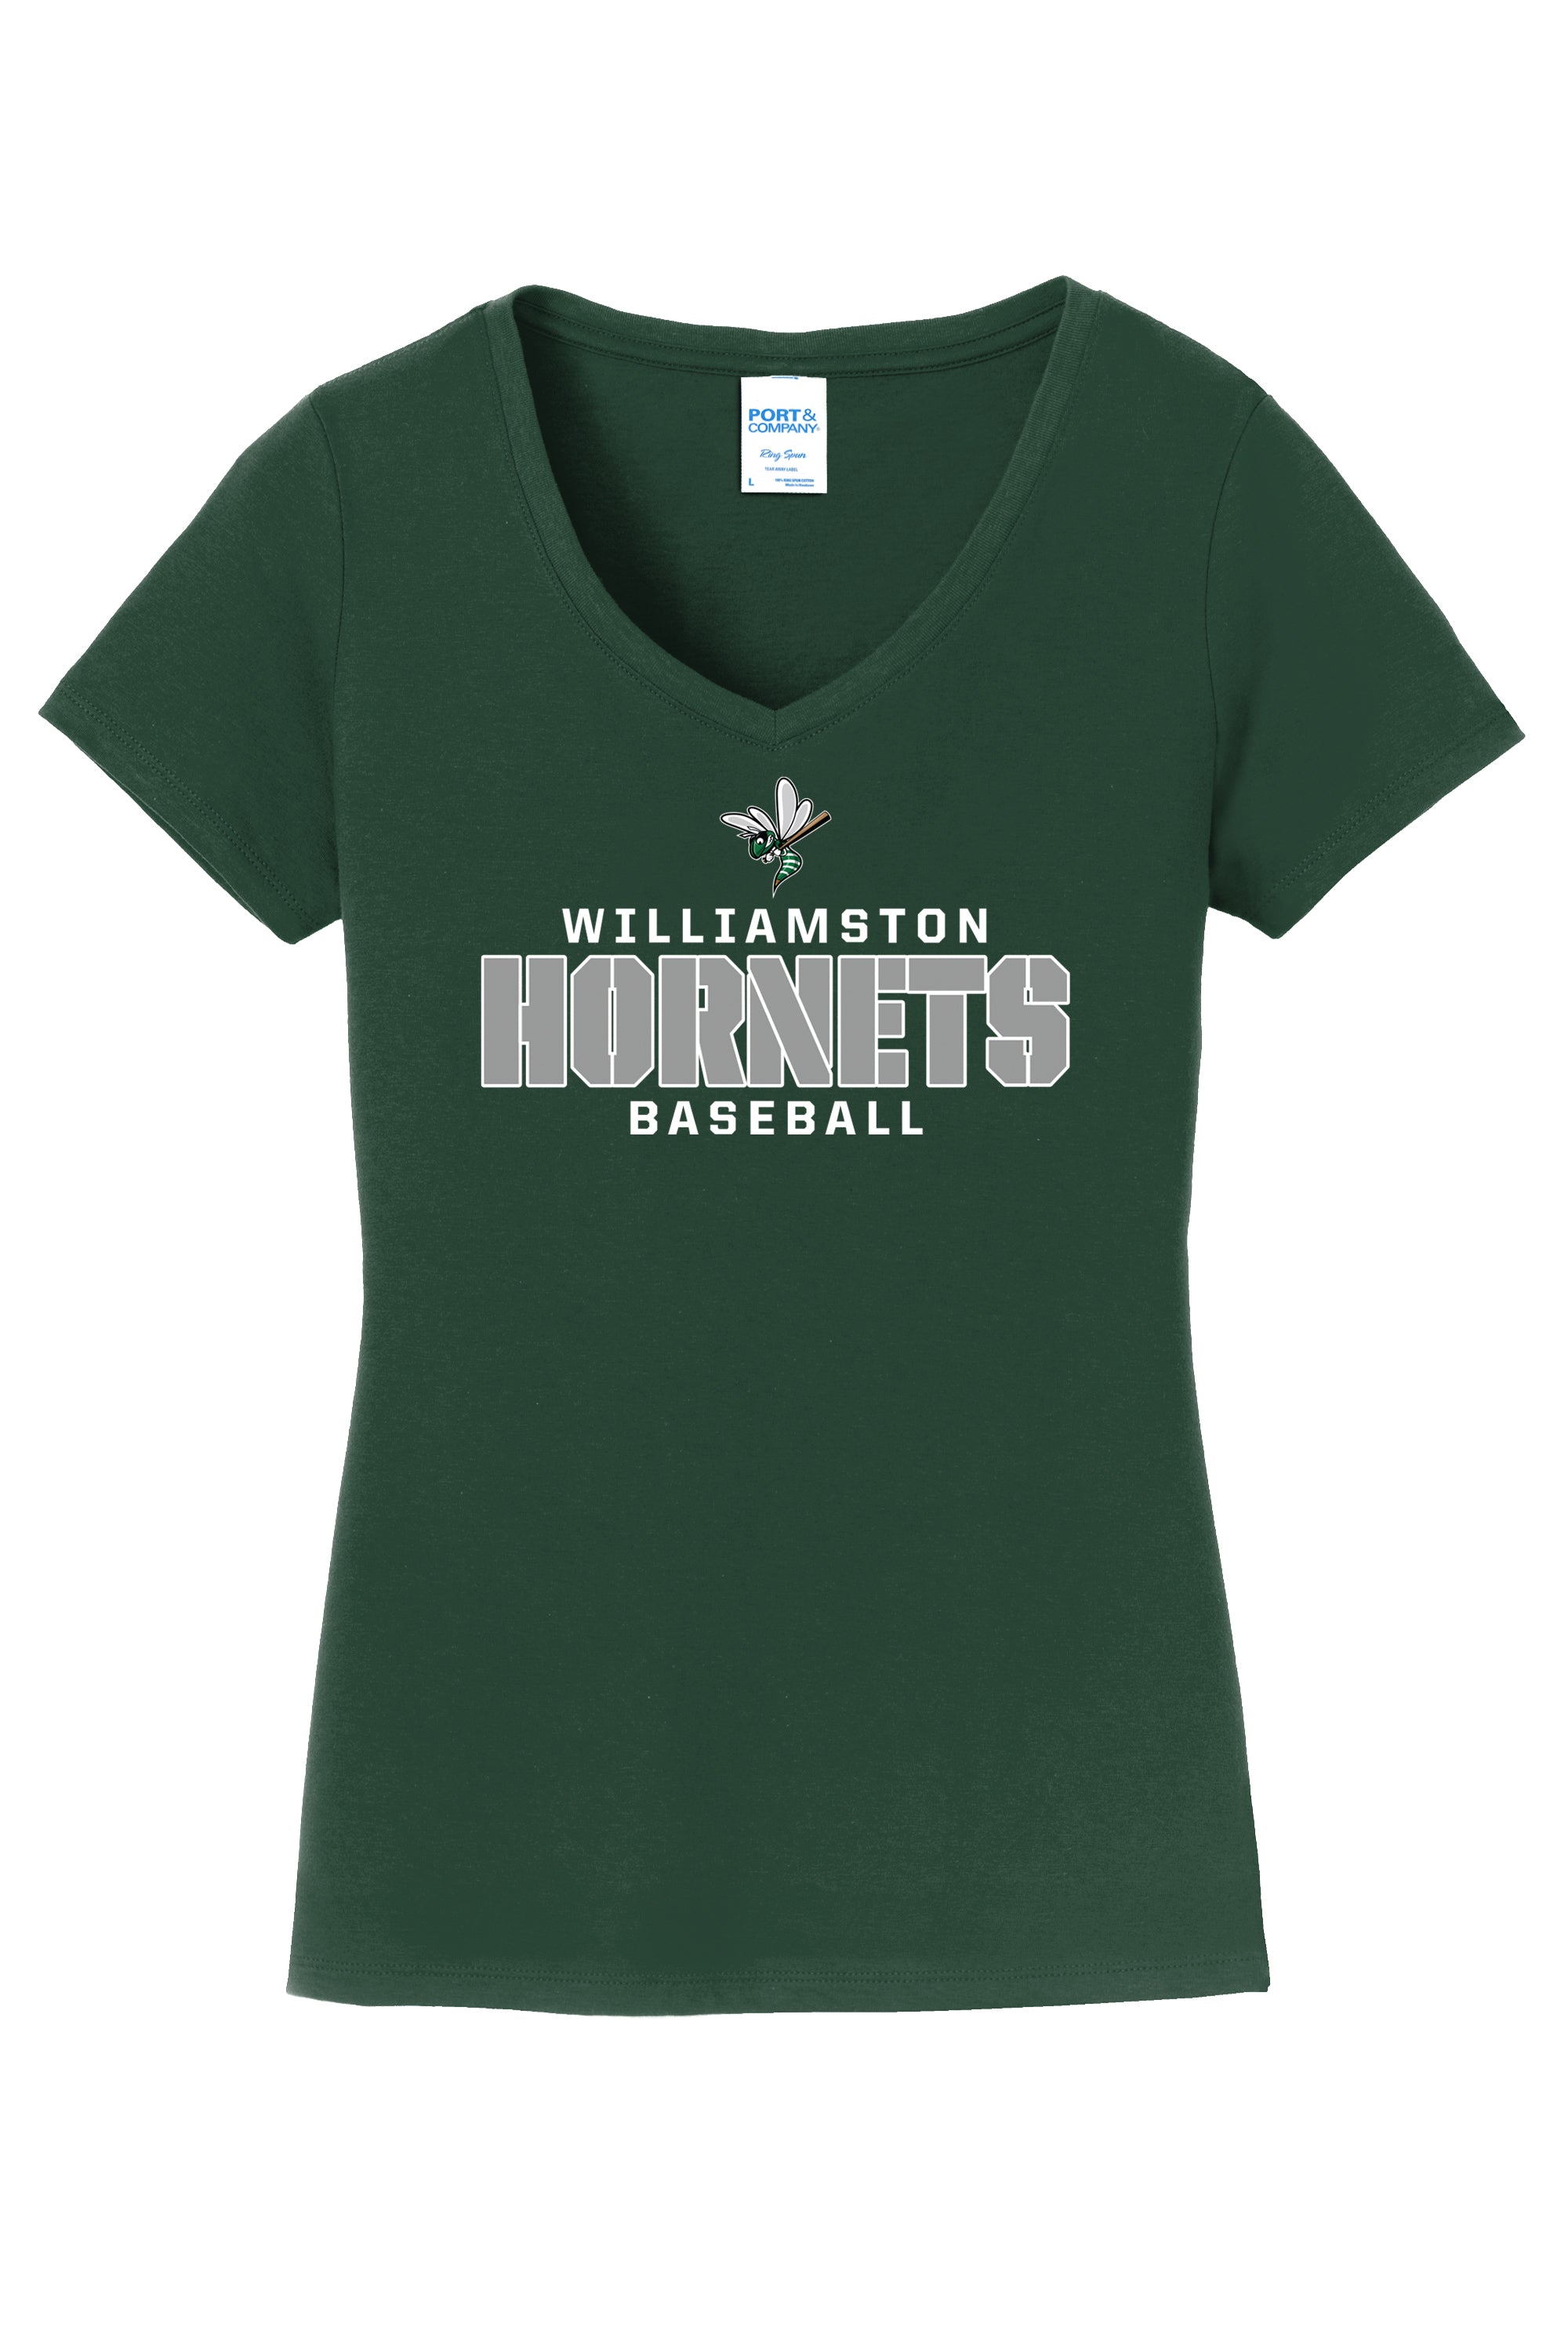 Williamston Baseball - Ladies V-neck Tee